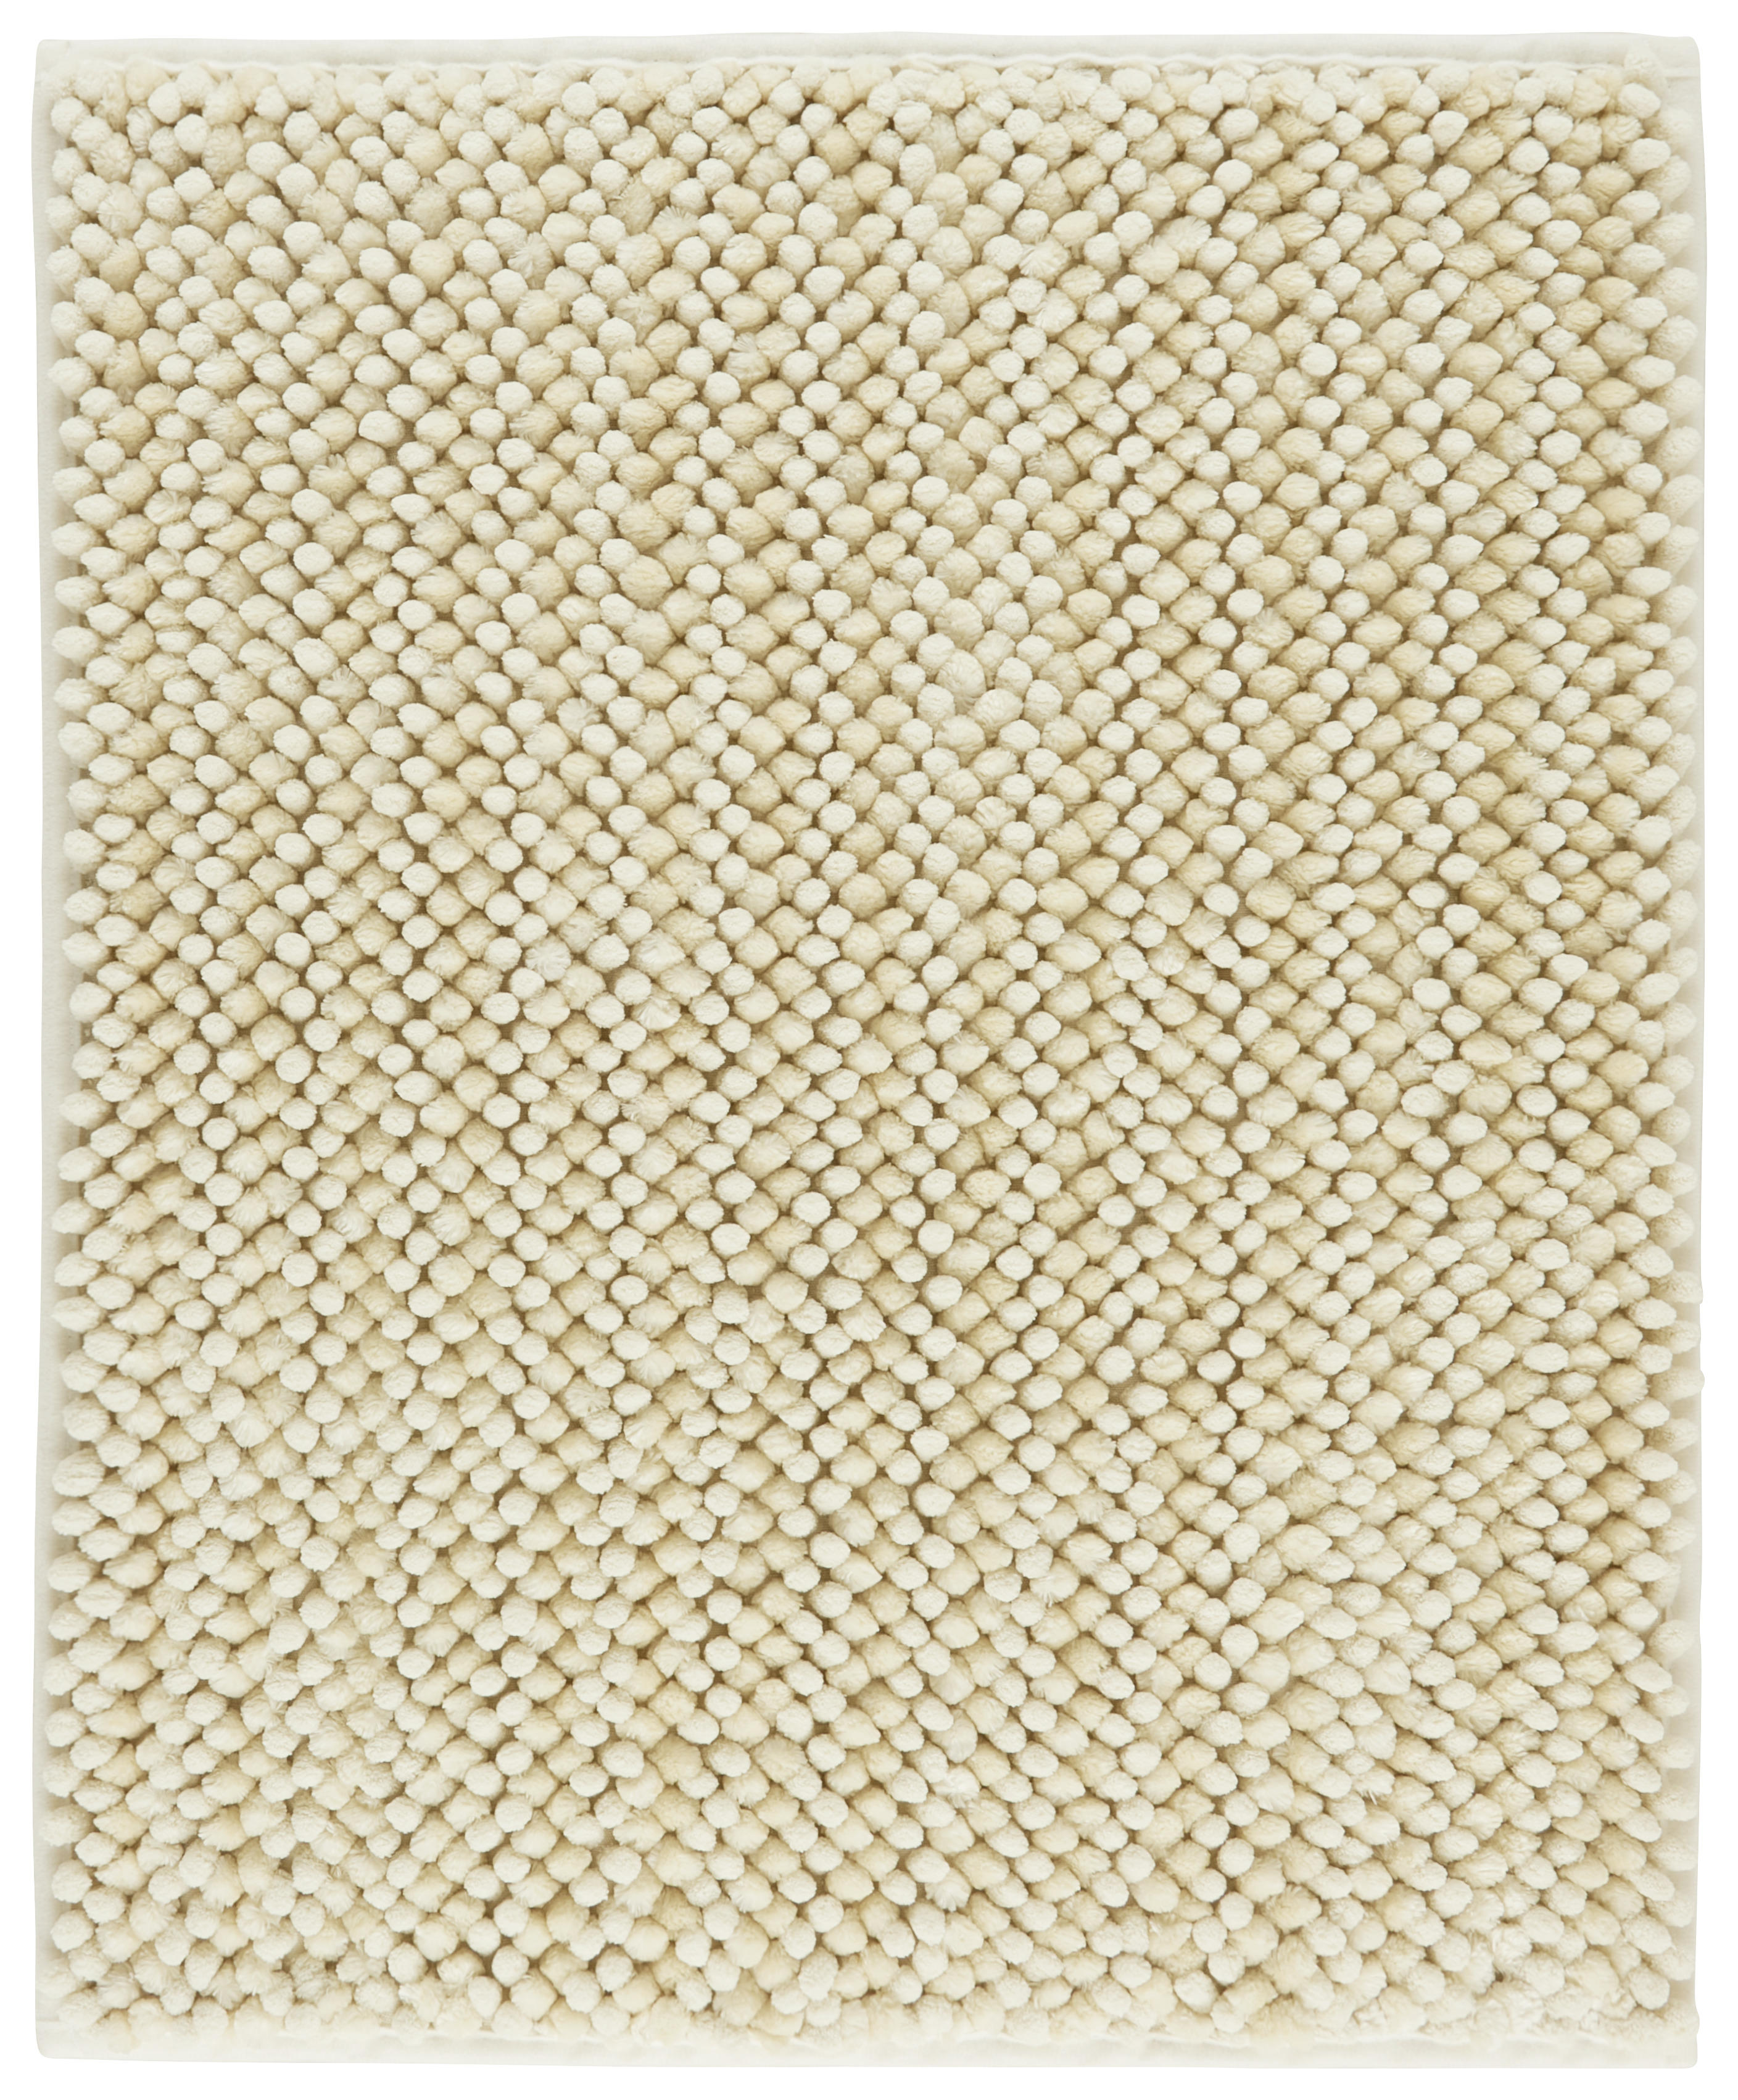 BADEMATTE Soft 60/50 cm  - Weiß, Trend, Kunststoff/Textil (60/50cm) - Esposa